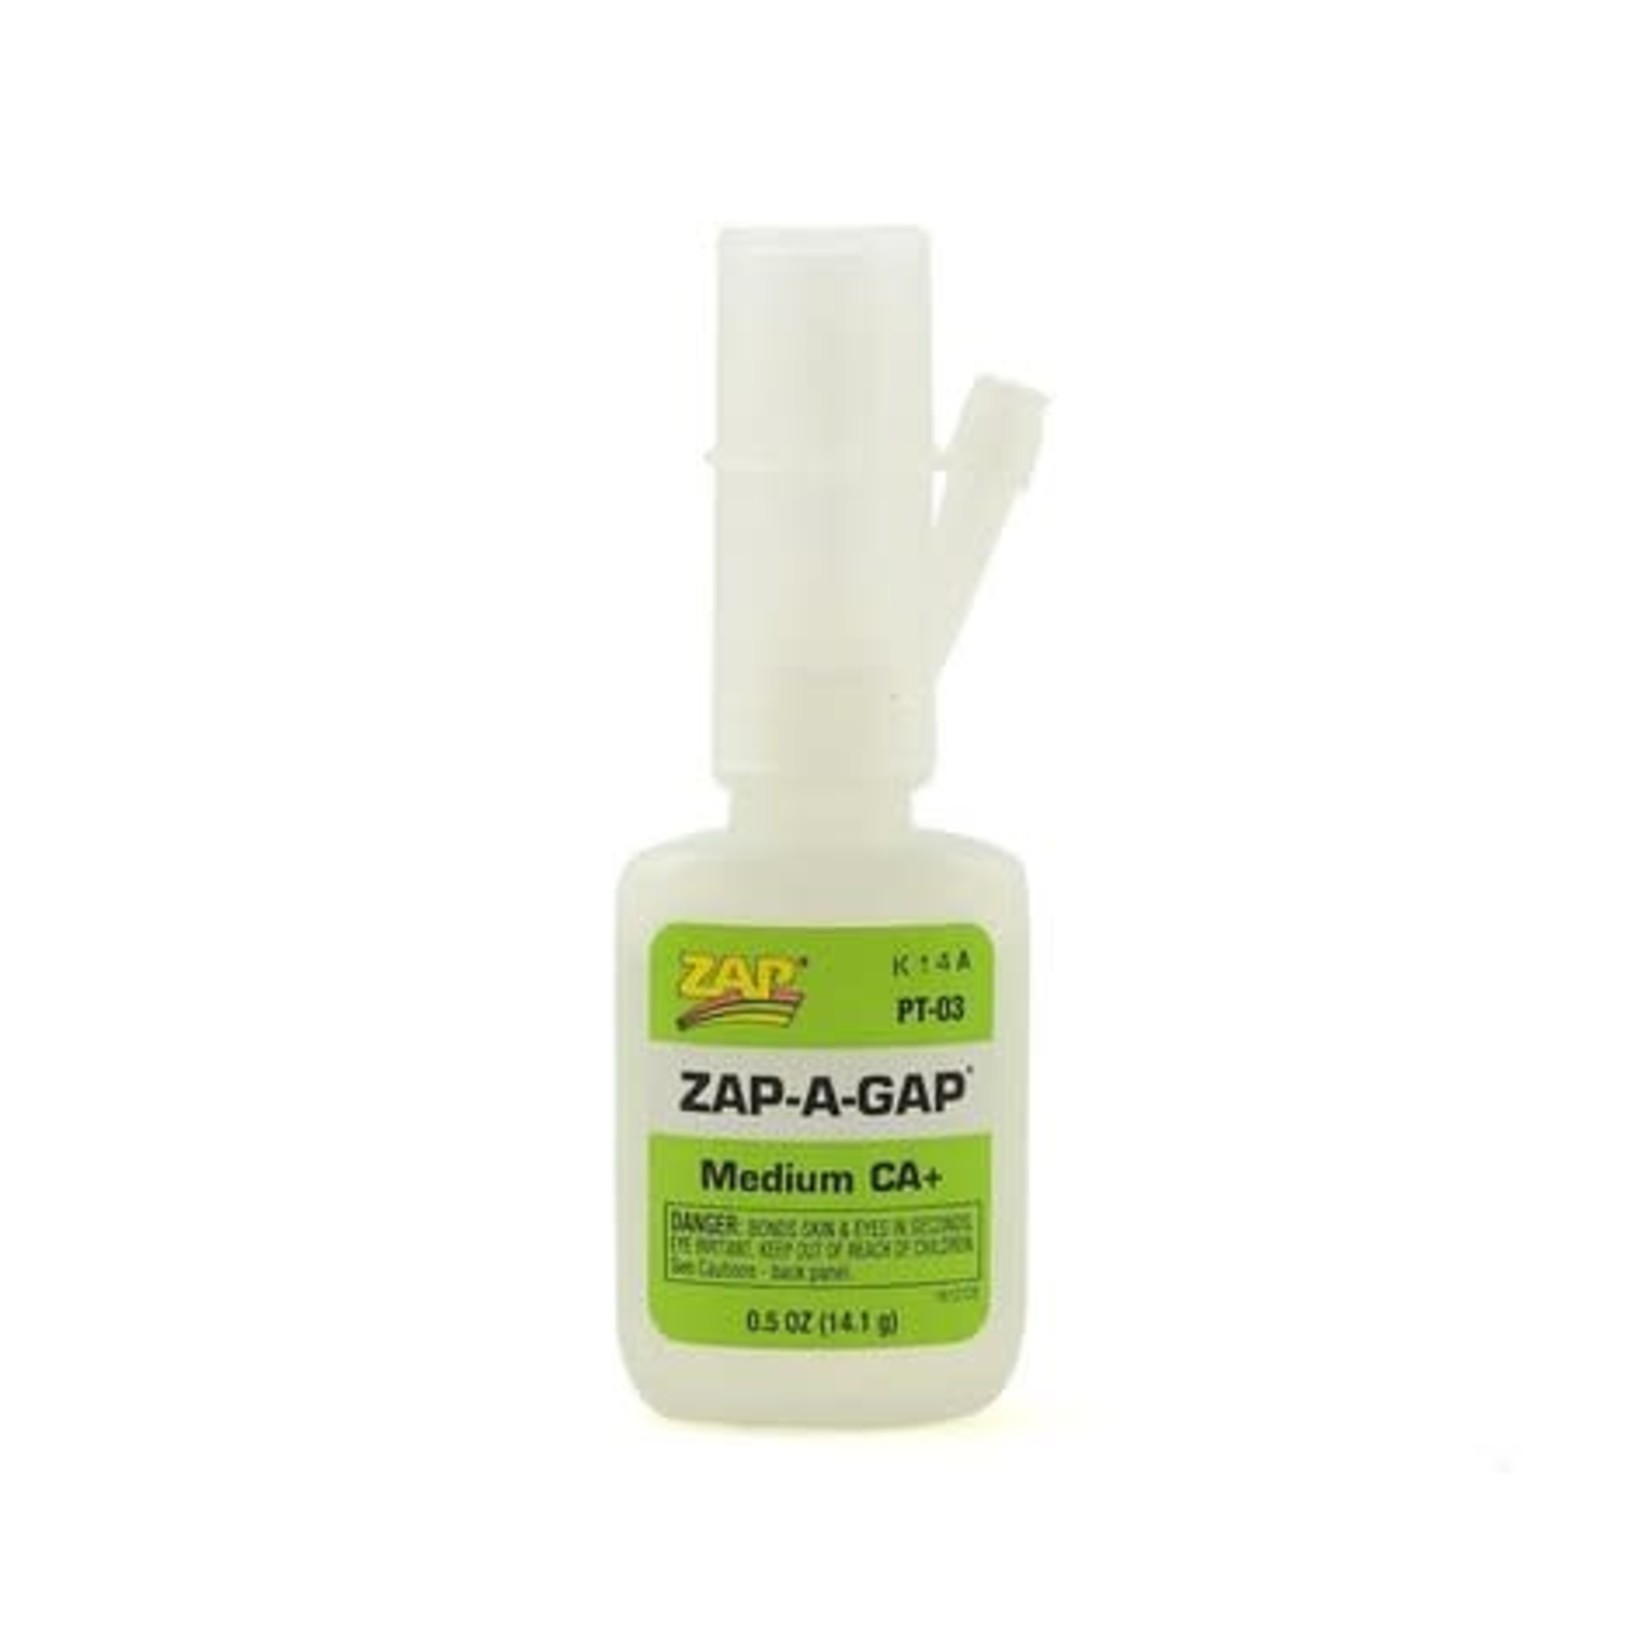 ZAP ZAP Zap-A-Gap CA+ Glue (Medium) (0.5oz) #PT-03